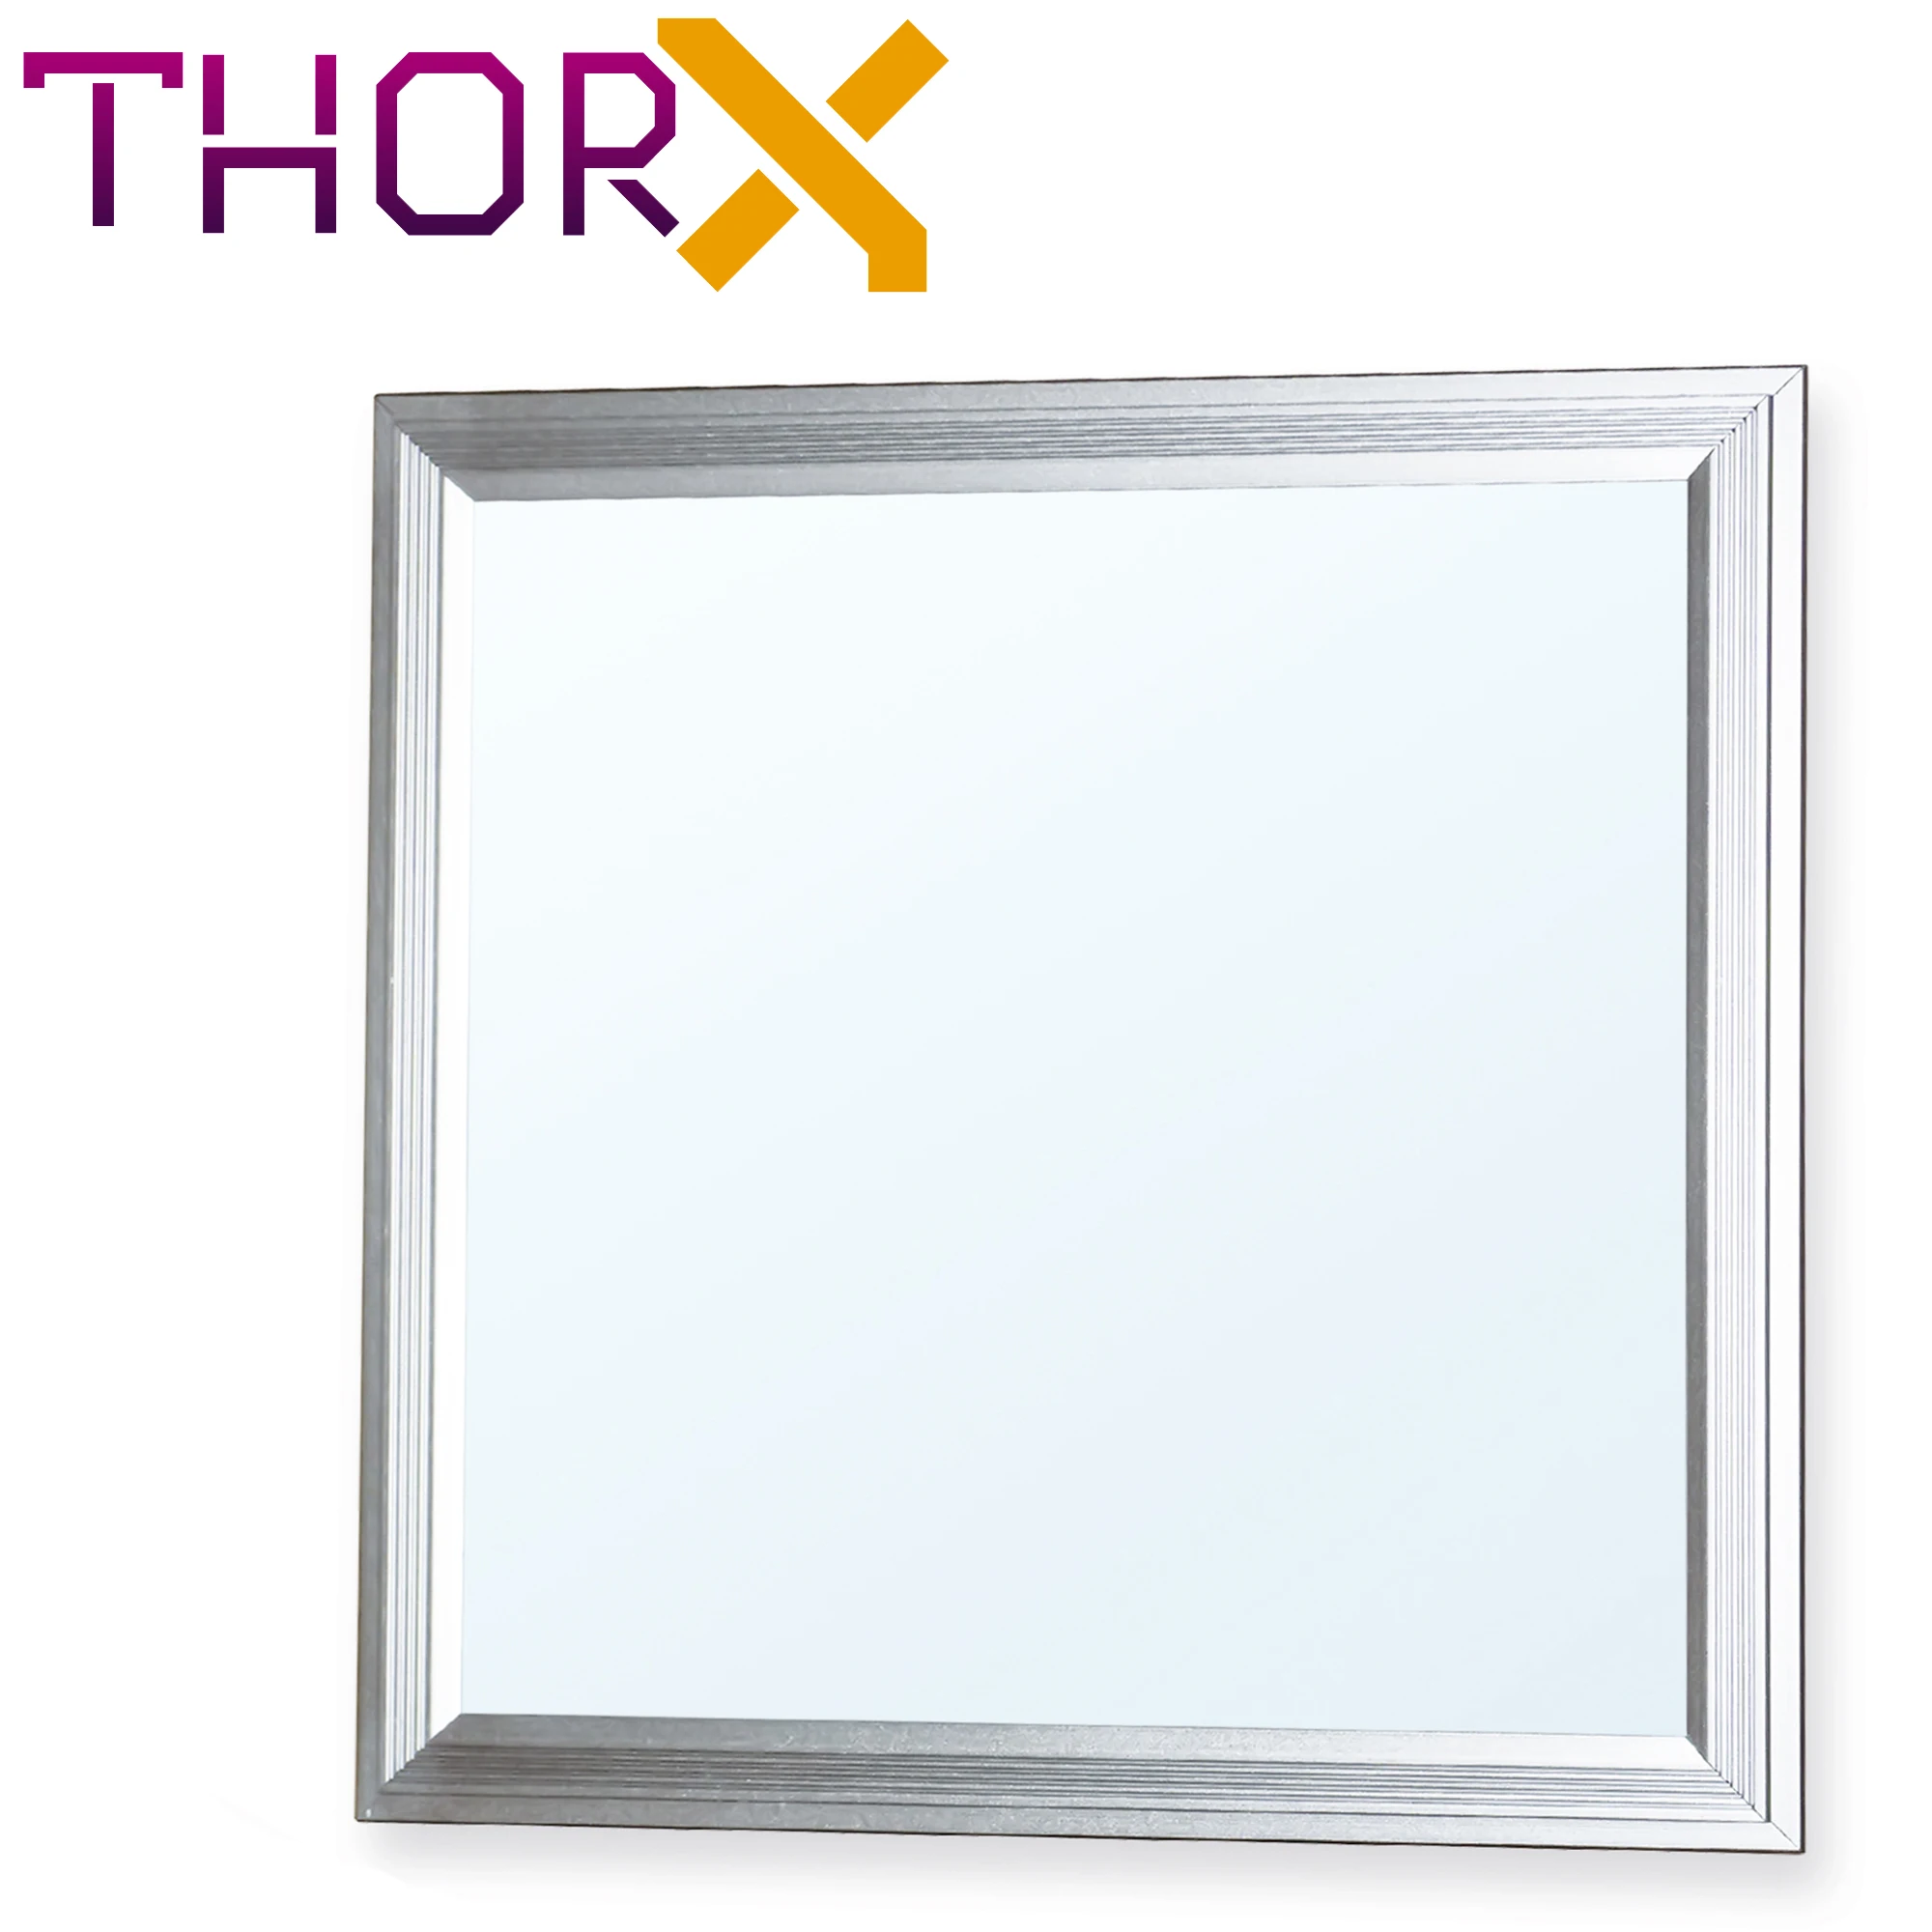 ThorX 30x30 см ультратонкий Светодиодный Панель-10 Вт, 800 Lm потолочный светильник светодиодный драйвер 100-240V Холодный/теплый белый/нейтральный комментарий, Япония, Корея, быстрая